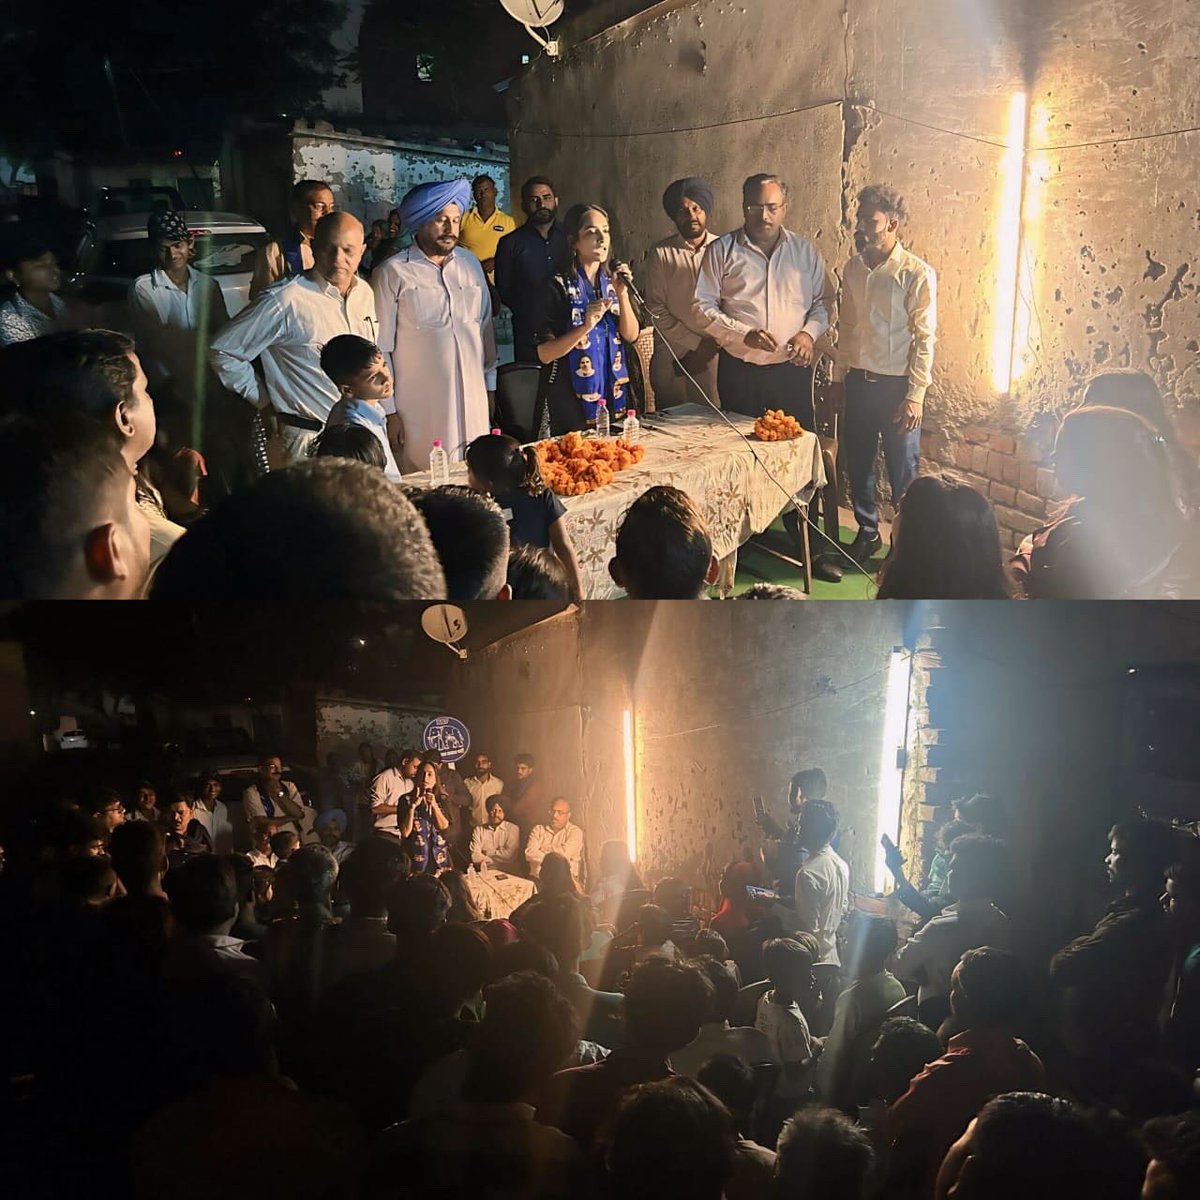 देर रात हुई Faidan Nizampur के साथियों से मुलाकात #voteforbsp #votefordrritu #voteforchange #chandigarhloksabhaelection